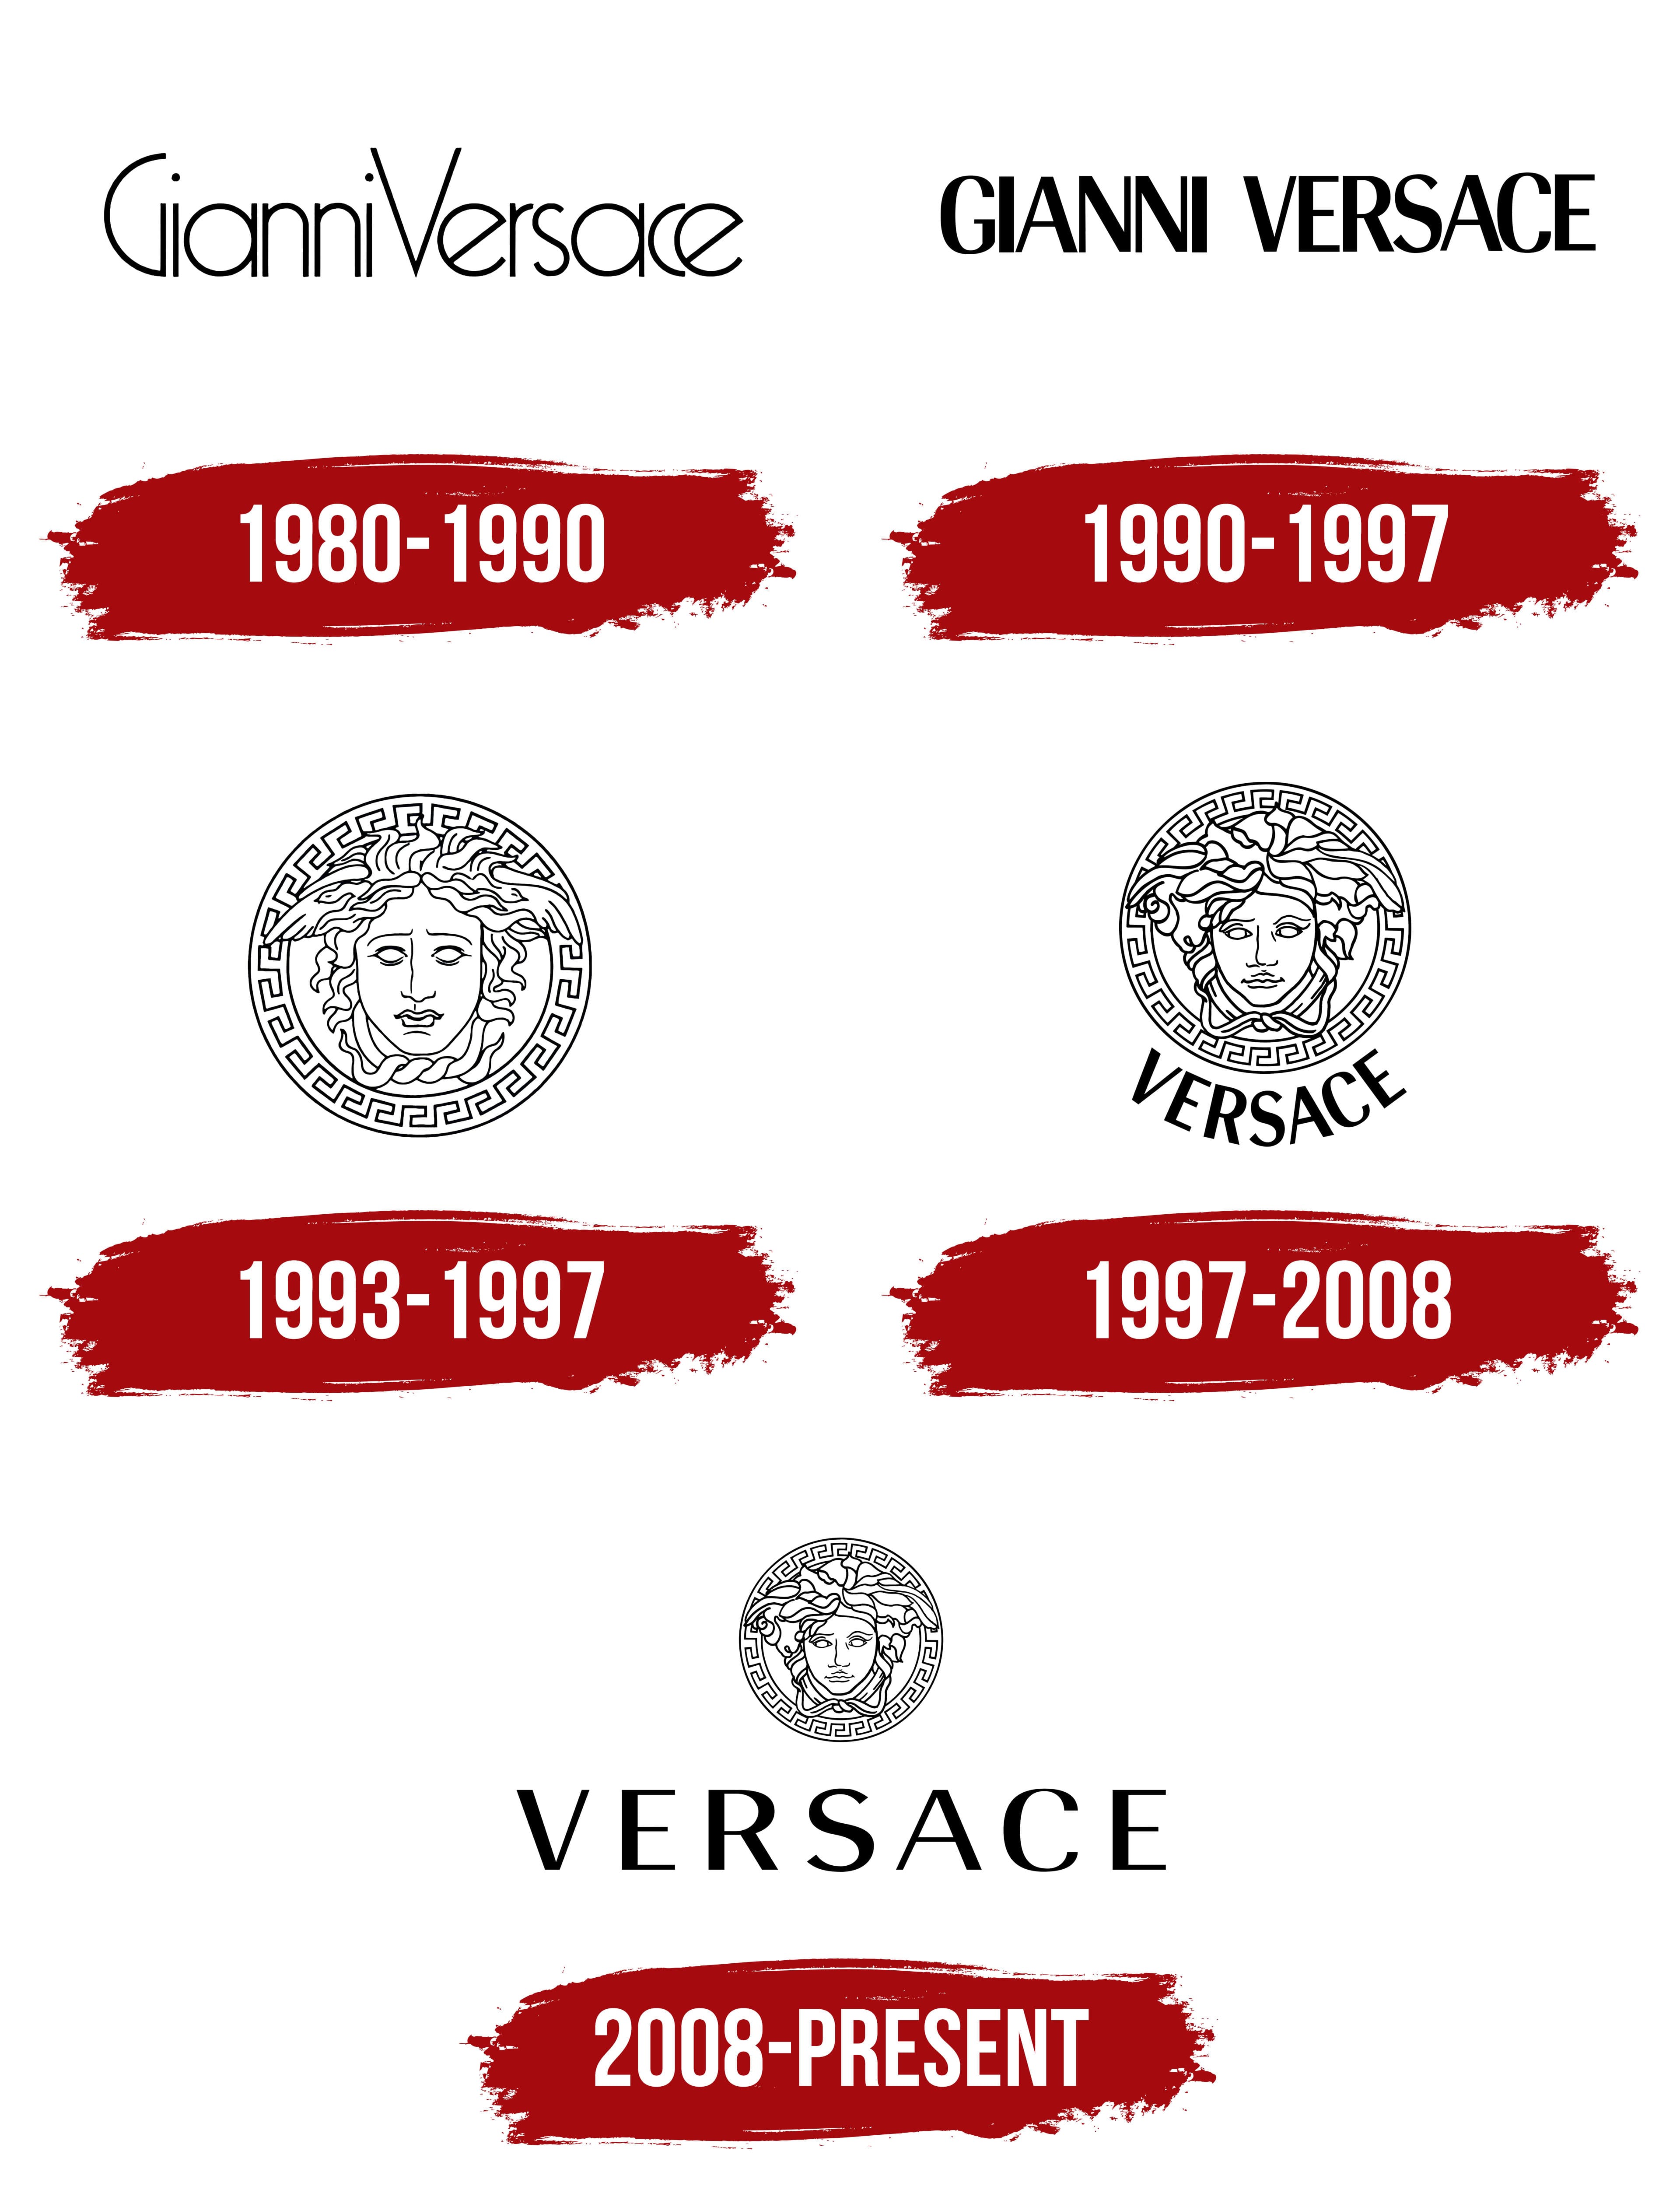 Michael Kors Logo Design: History & Evolution